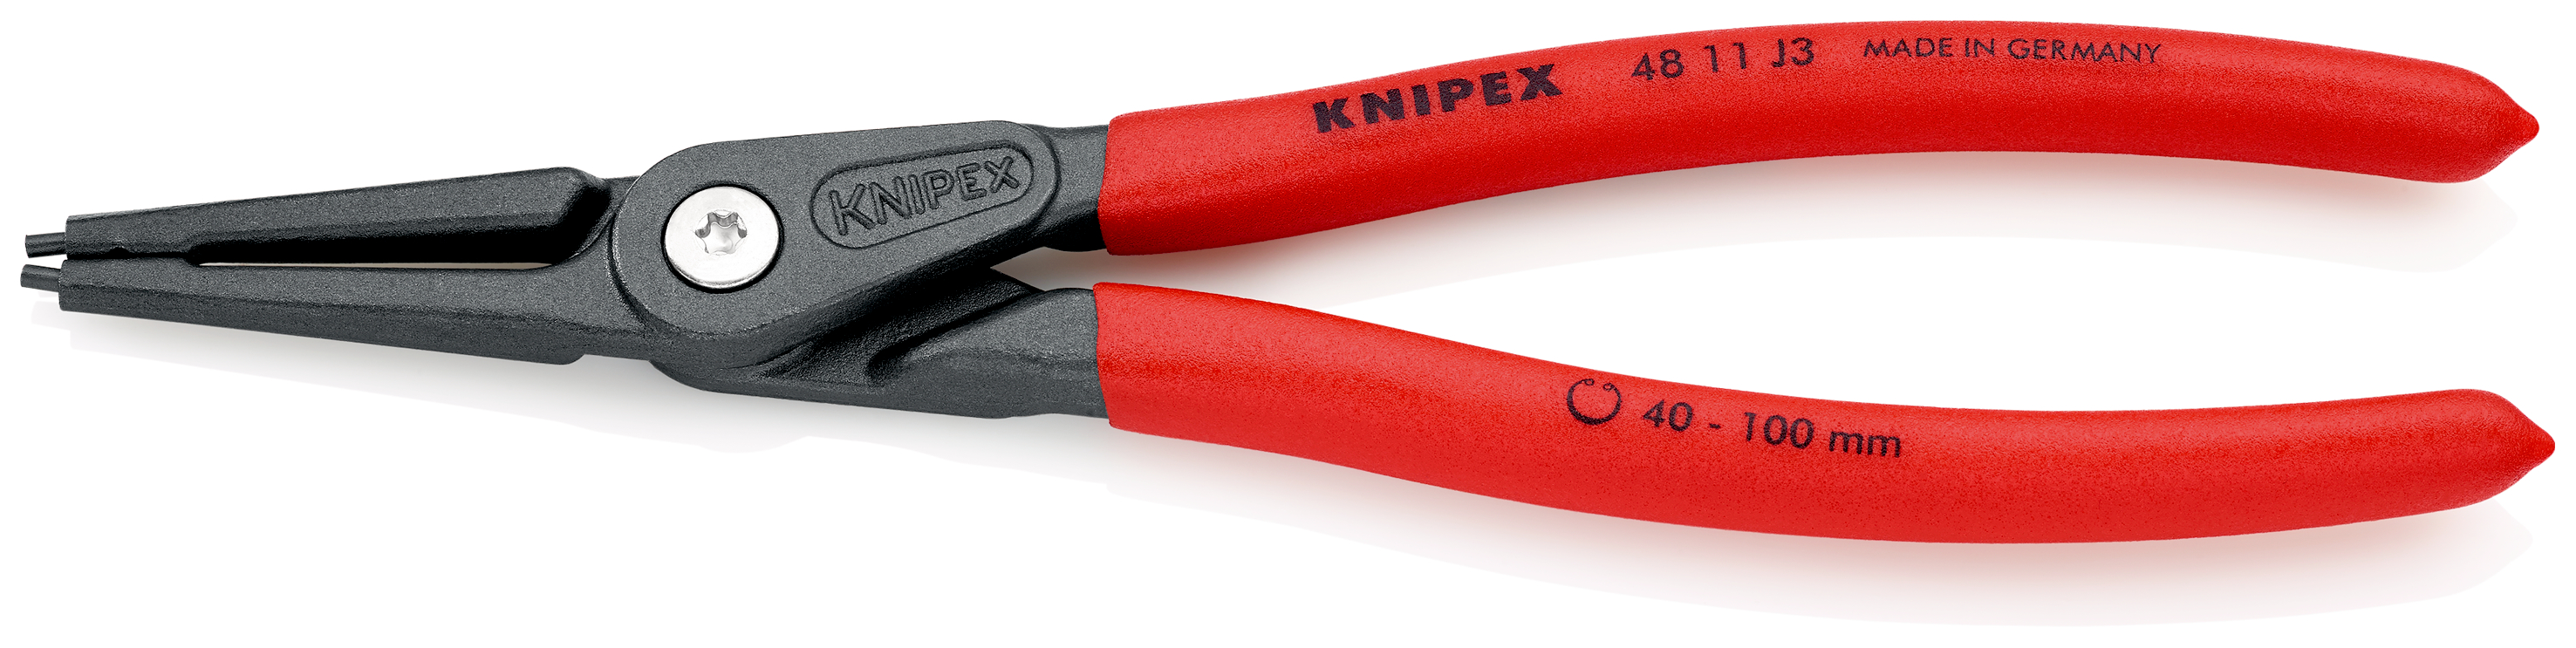 Knipex 4811J3 Cleste pentru inele de siguranta de interior, lungime 225 mm